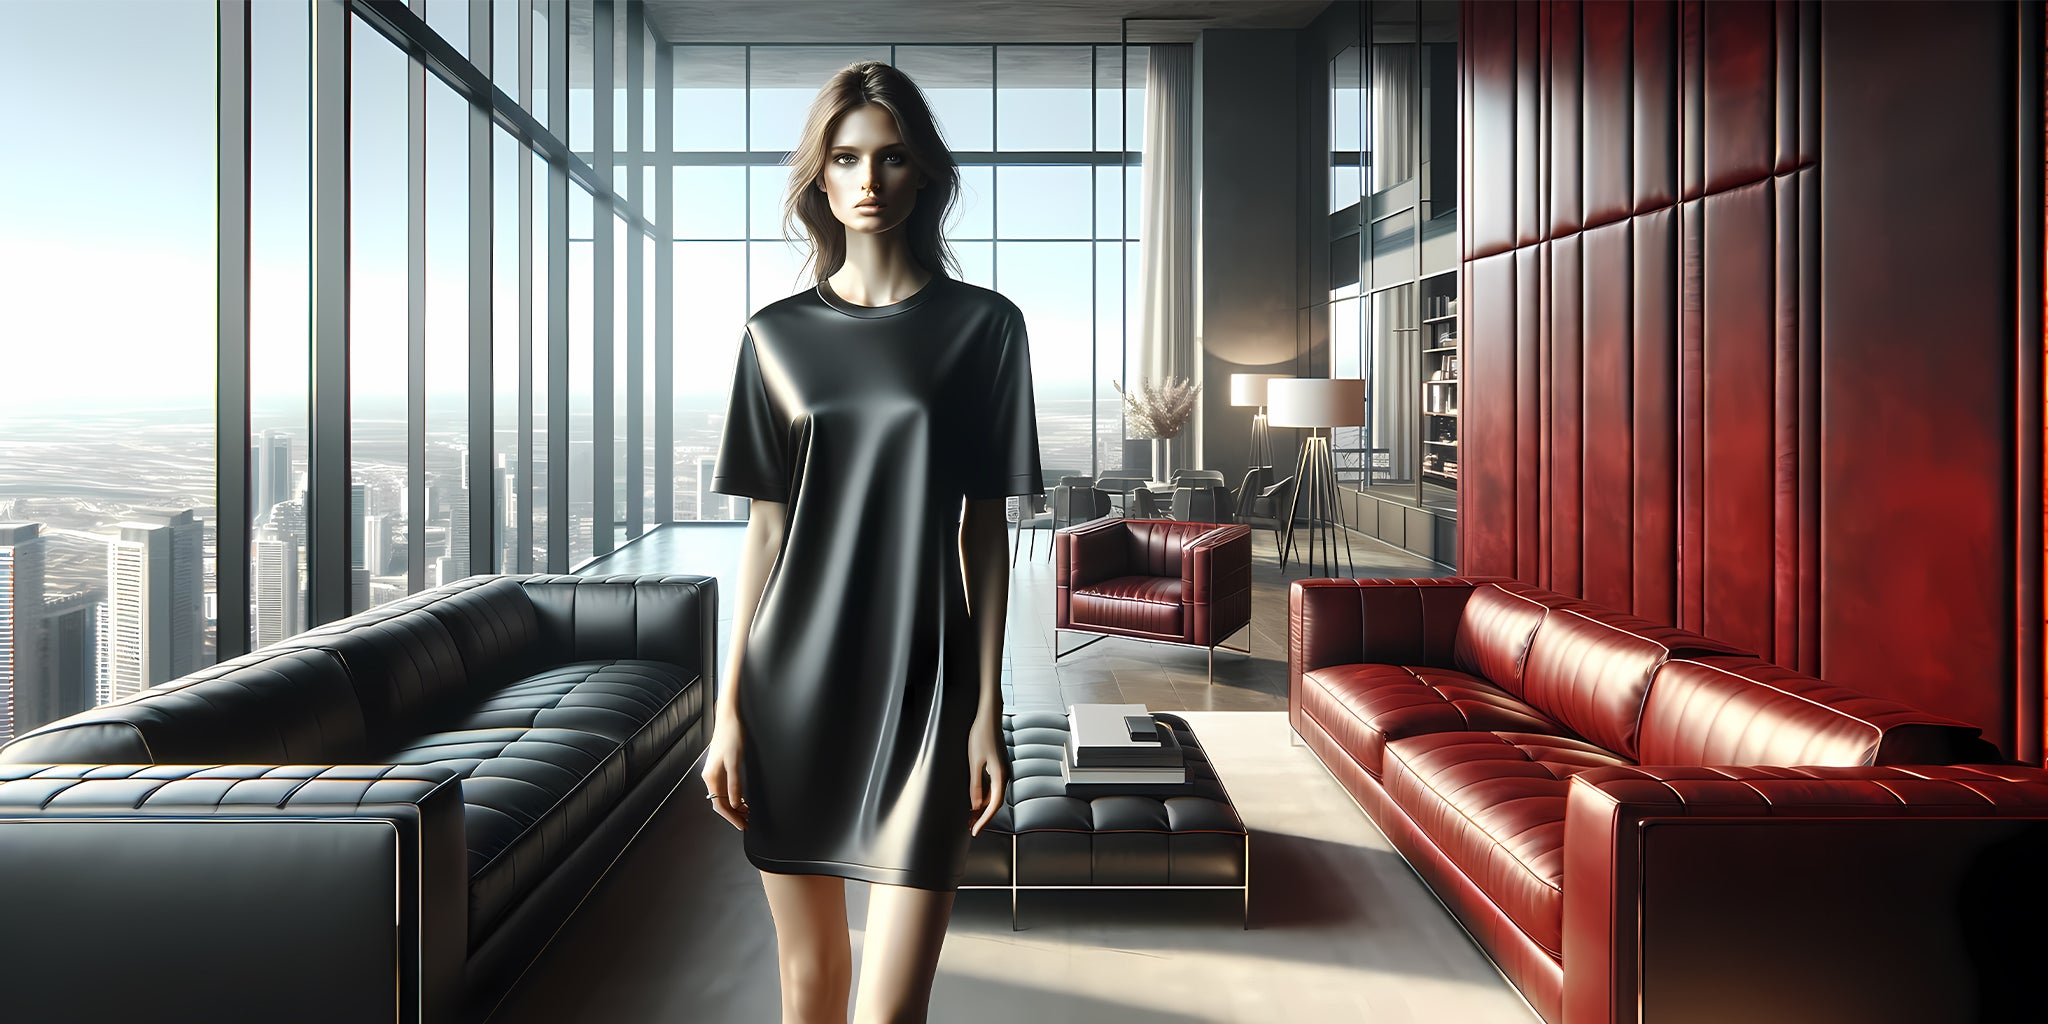 1-Dragon Foxx™ レディース T シャツ ドレス バナー - 高級ワンルーム アパートメントで当社の黒い T シャツ ドレスを着ている若い女性を特集